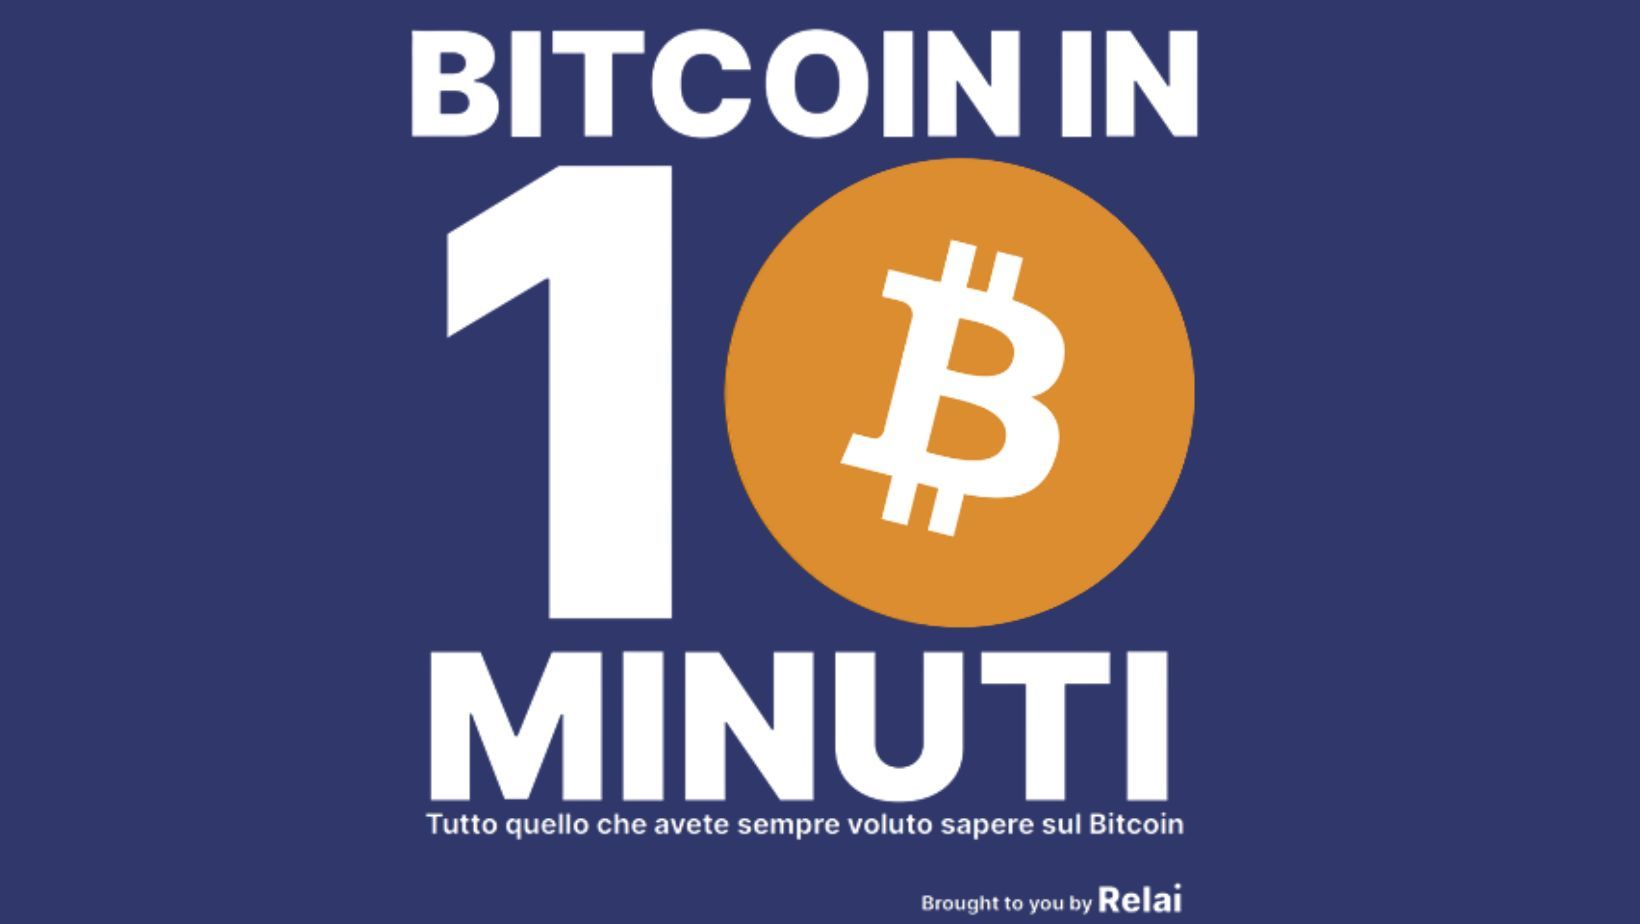 Bitcoin in 10 Minuti